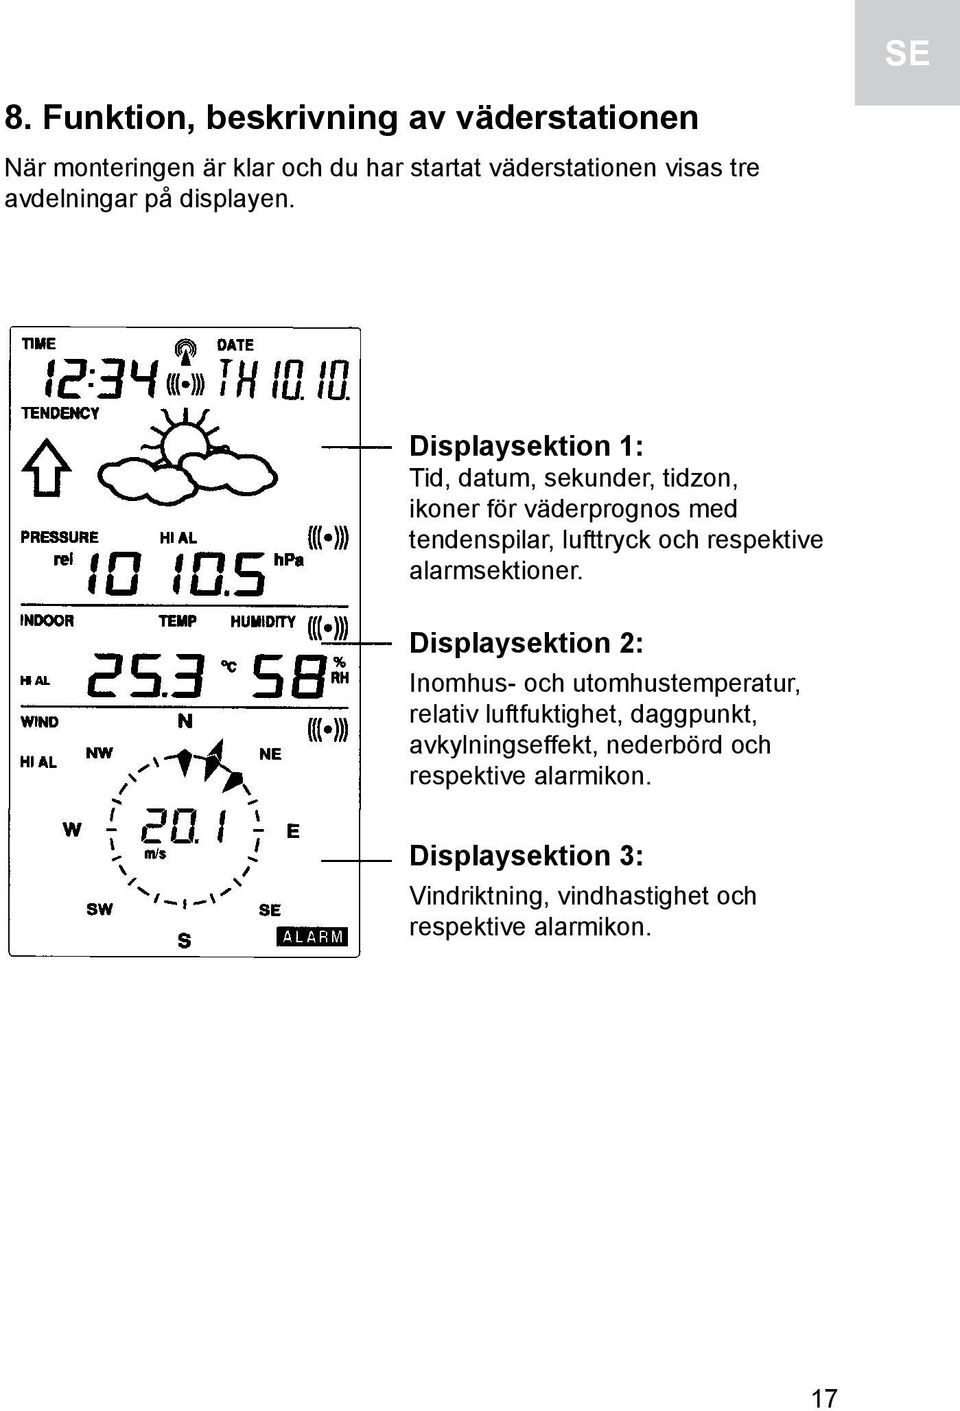 Displaysektion 1: Tid, datum, sekunder, tidzon, ikoner för väderprognos med tendenspilar, lufttryck och respektive